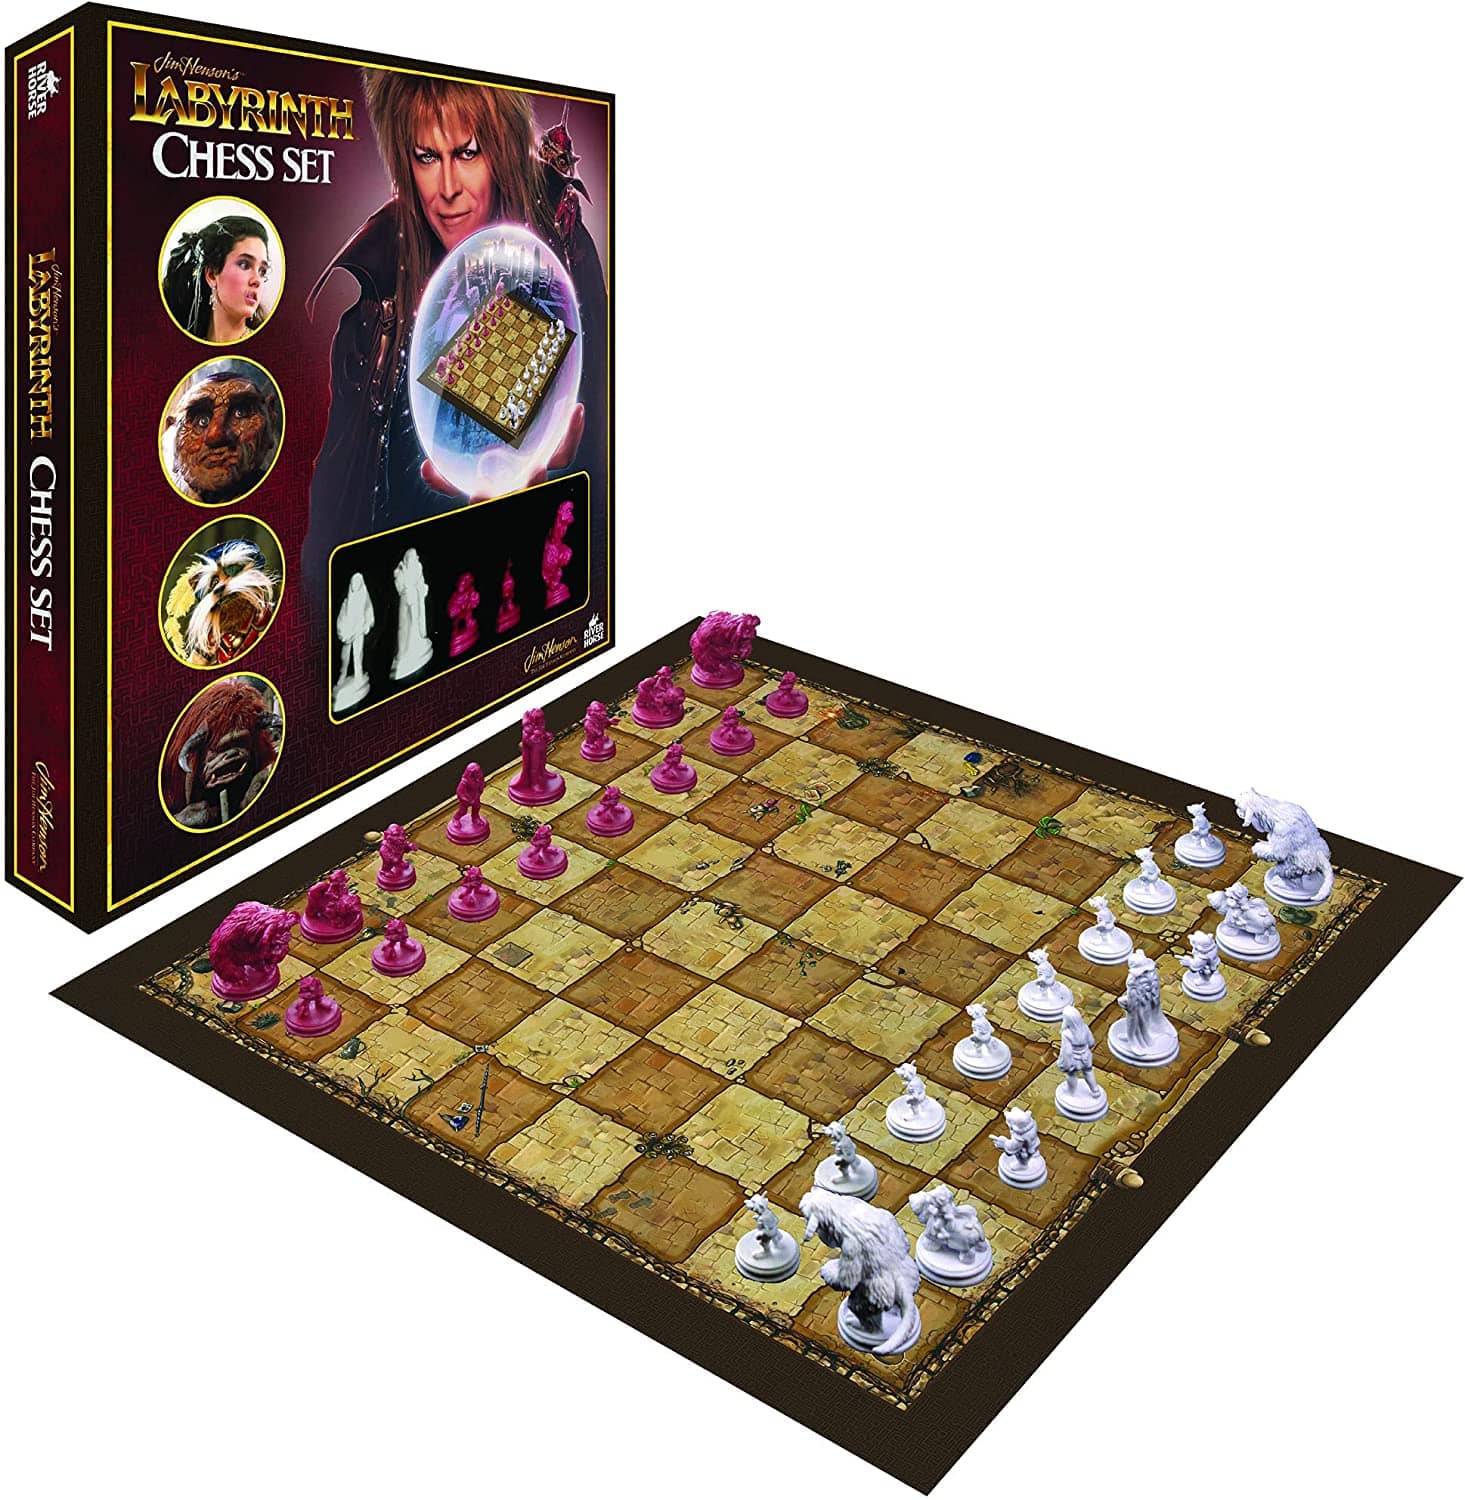 Chess Set: Labyrinth by Jim Henson - Third Eye